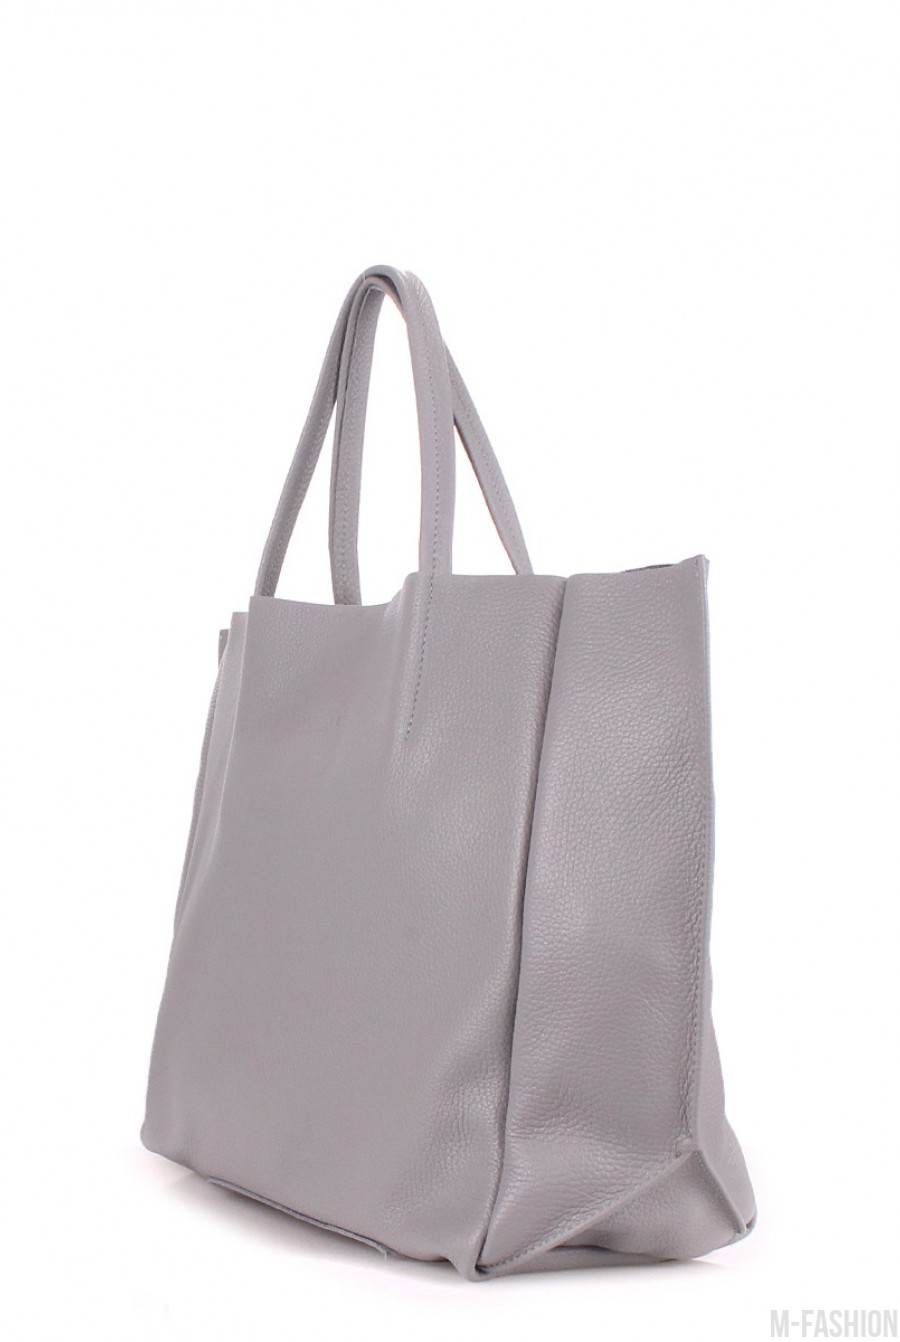 Кожаная серая сумка Soho классического дизайна- Фото 2